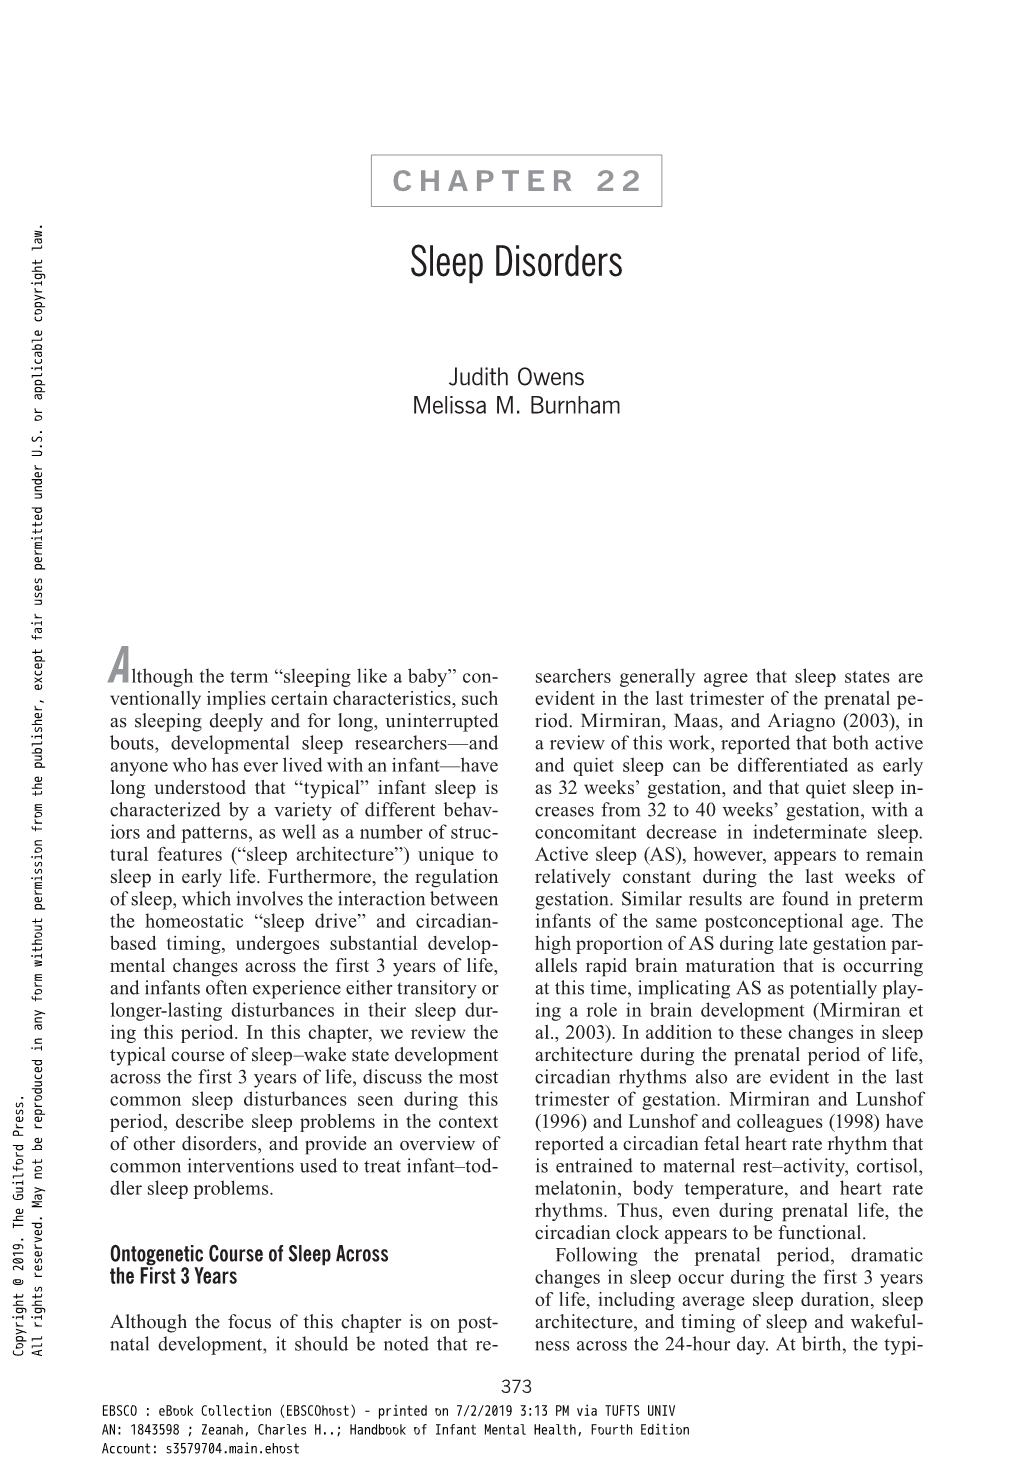 Chapter 22: Sleep Disorders